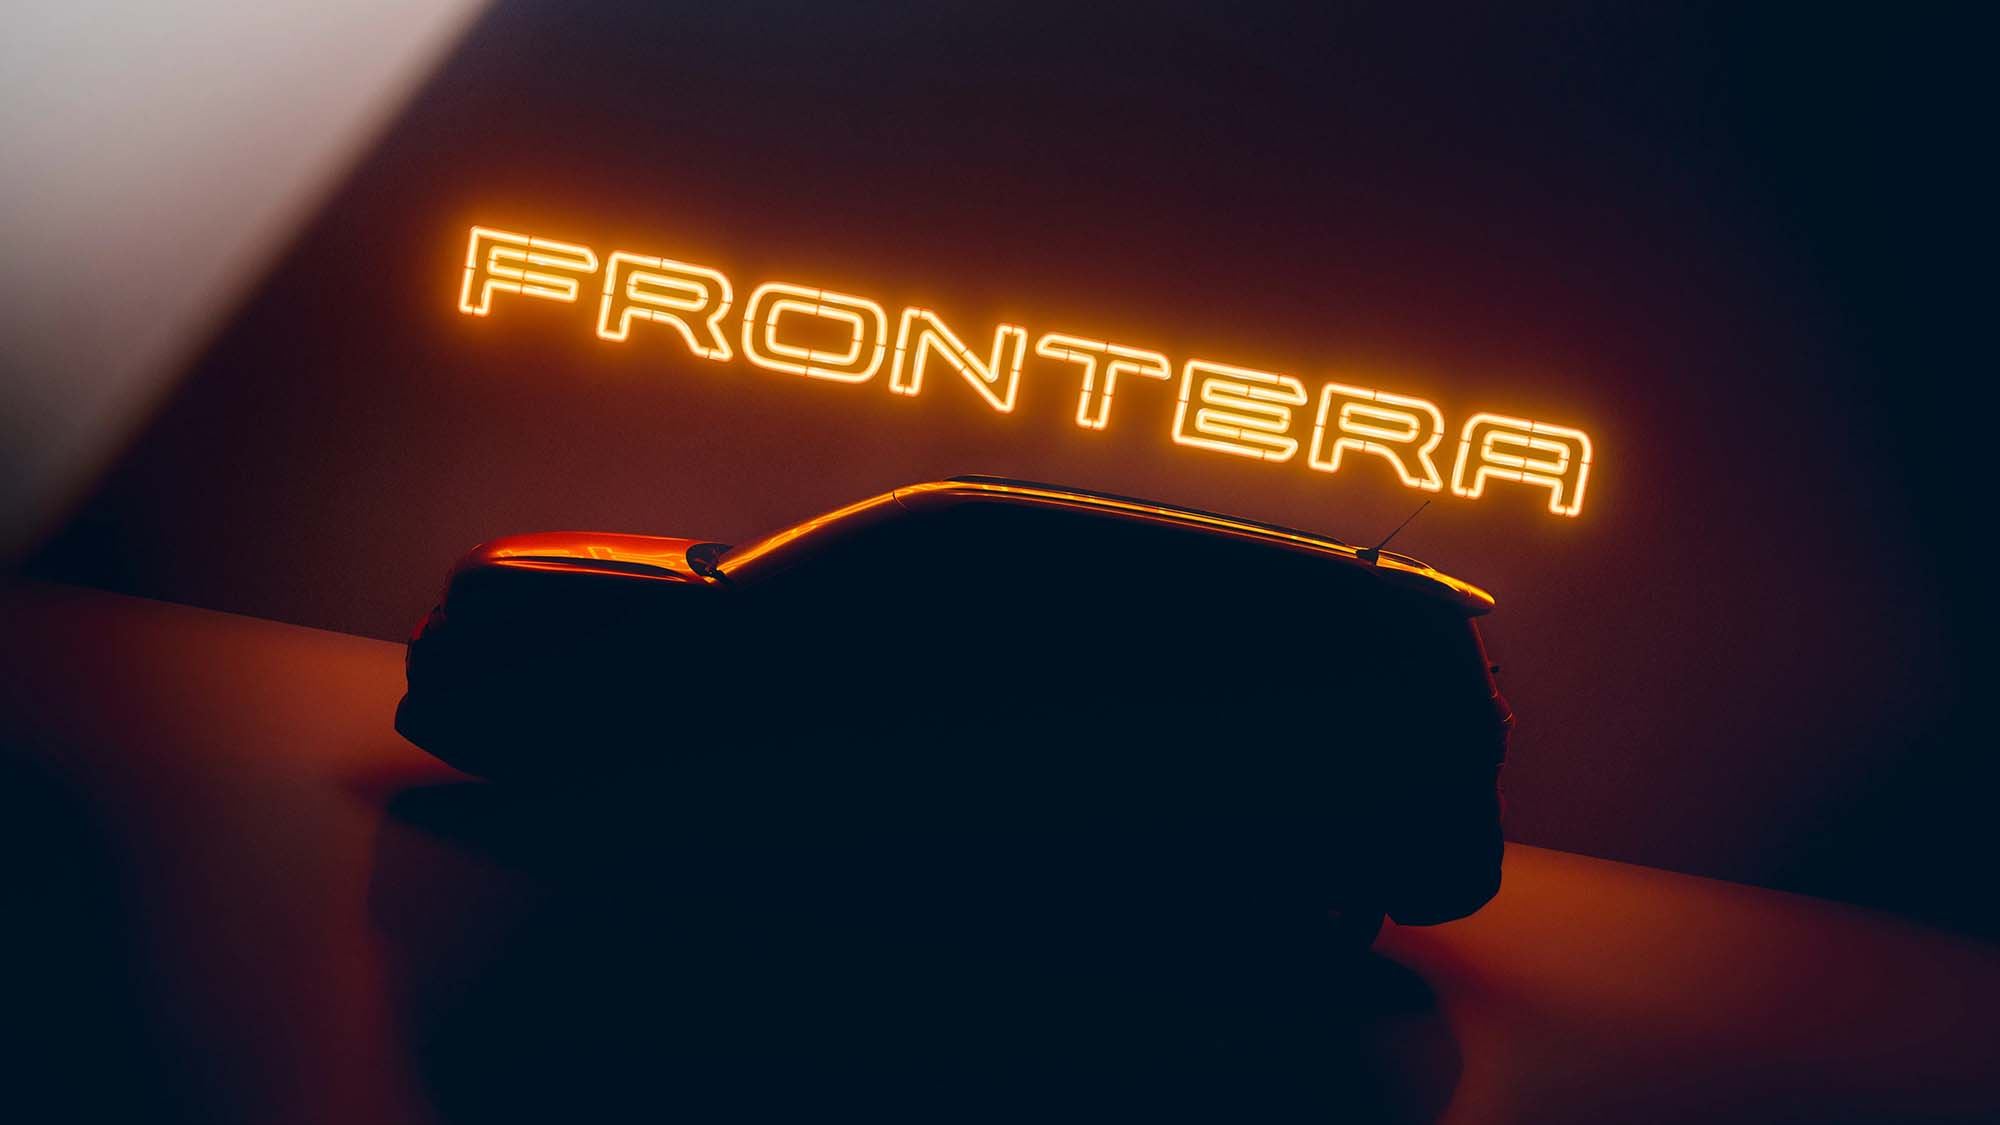 Gloednieuwe elektrische SUV van Opel krijgt de naam Frontera